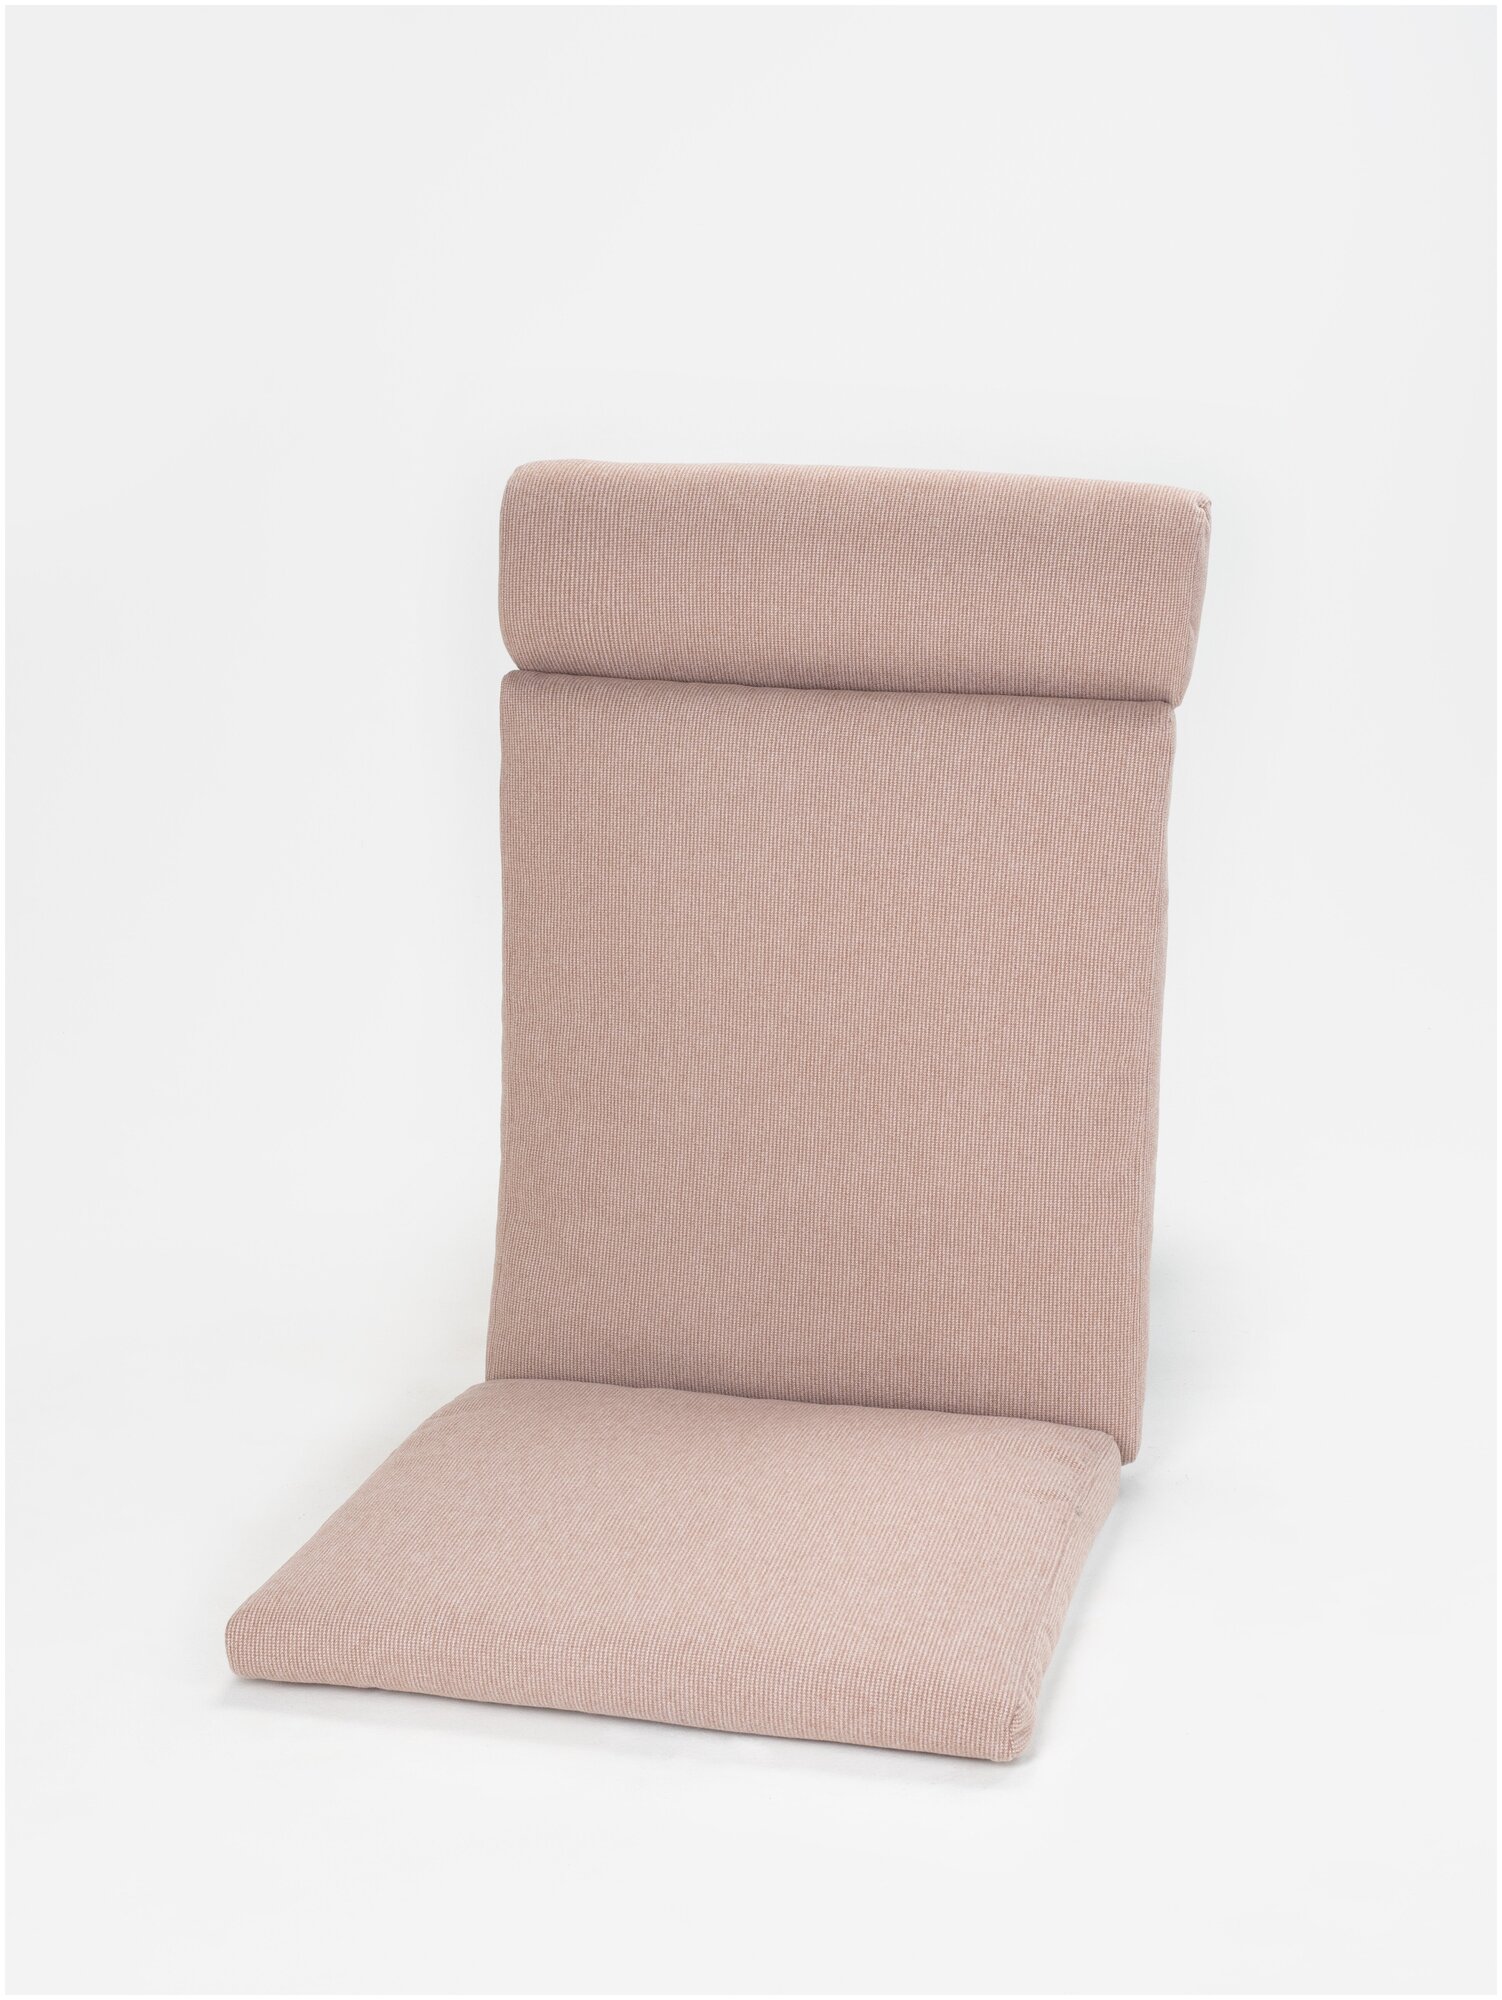 Подушка для кресла качалки, на подвесное кресло, матрас для качелей 137*57*8 - фотография № 5